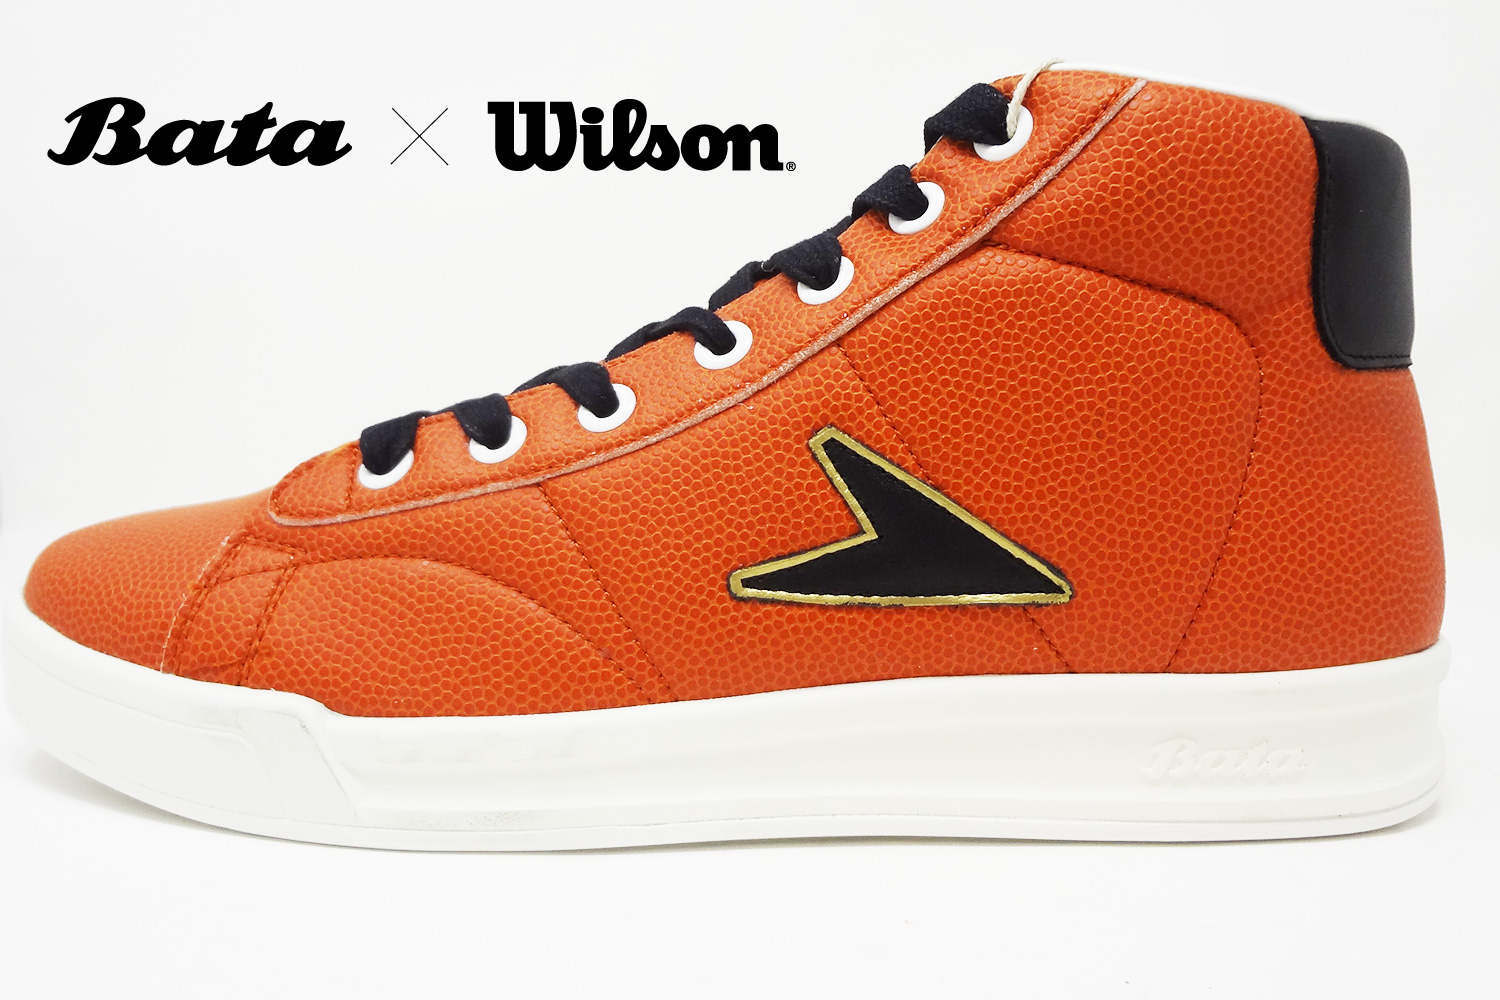 Bata x Wilson John Wooden sneaker giveaway side profile @ The Deffest